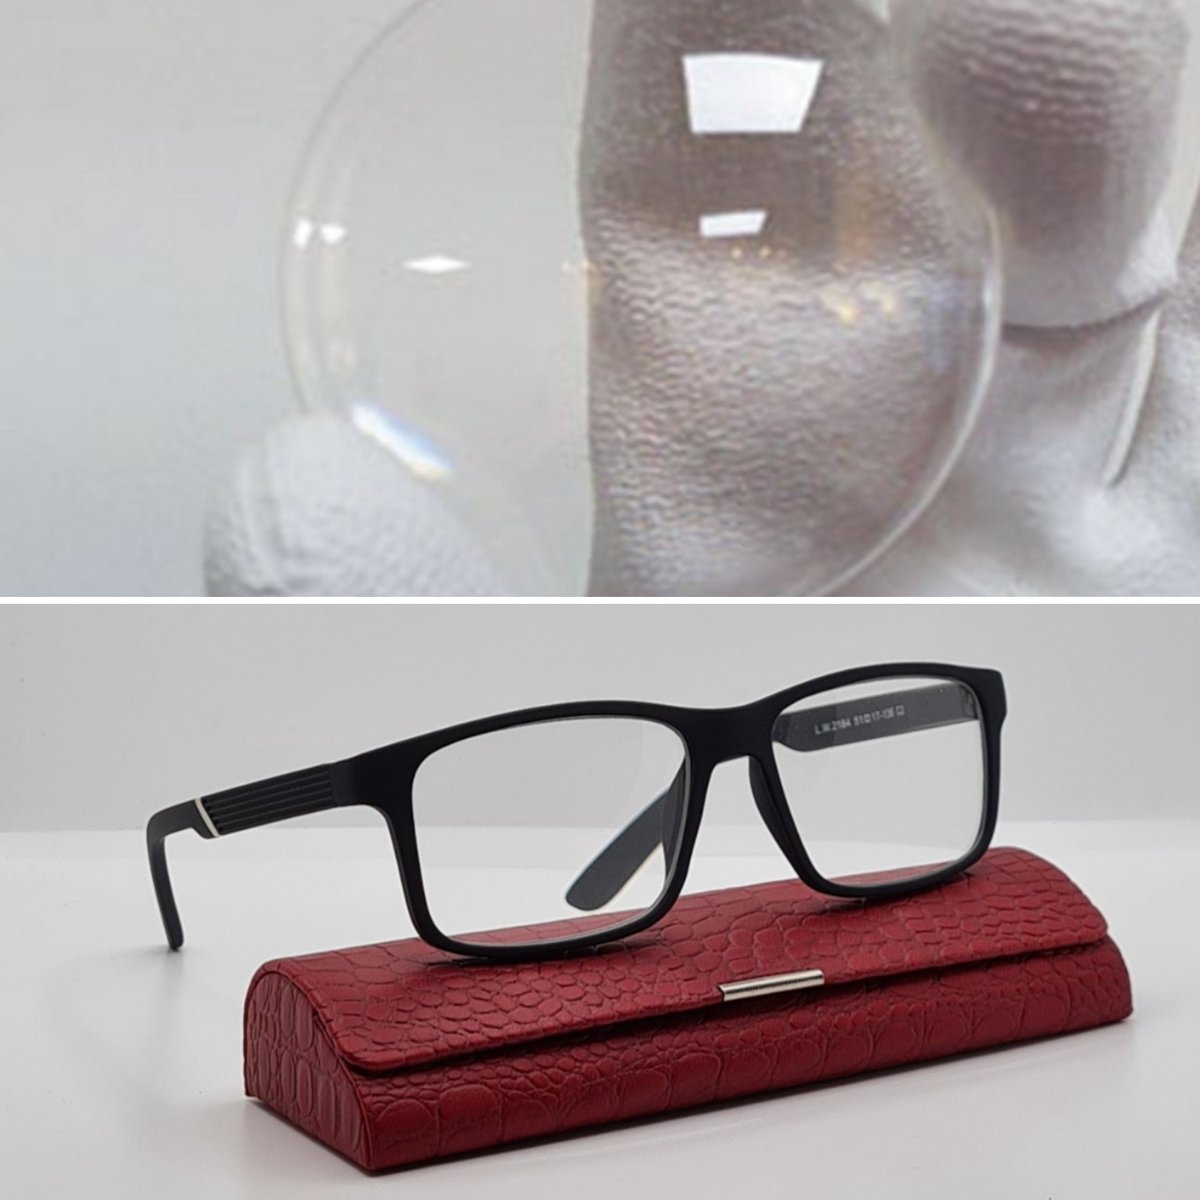 Leesbril met MINERAAL GLAS +4.0 - zwarte bril op sterkte +4,0 - leesbril met brillenkoker en microvezel doek - Fedrov 2184 C2 - lunettes verre minéral - Aland optiek